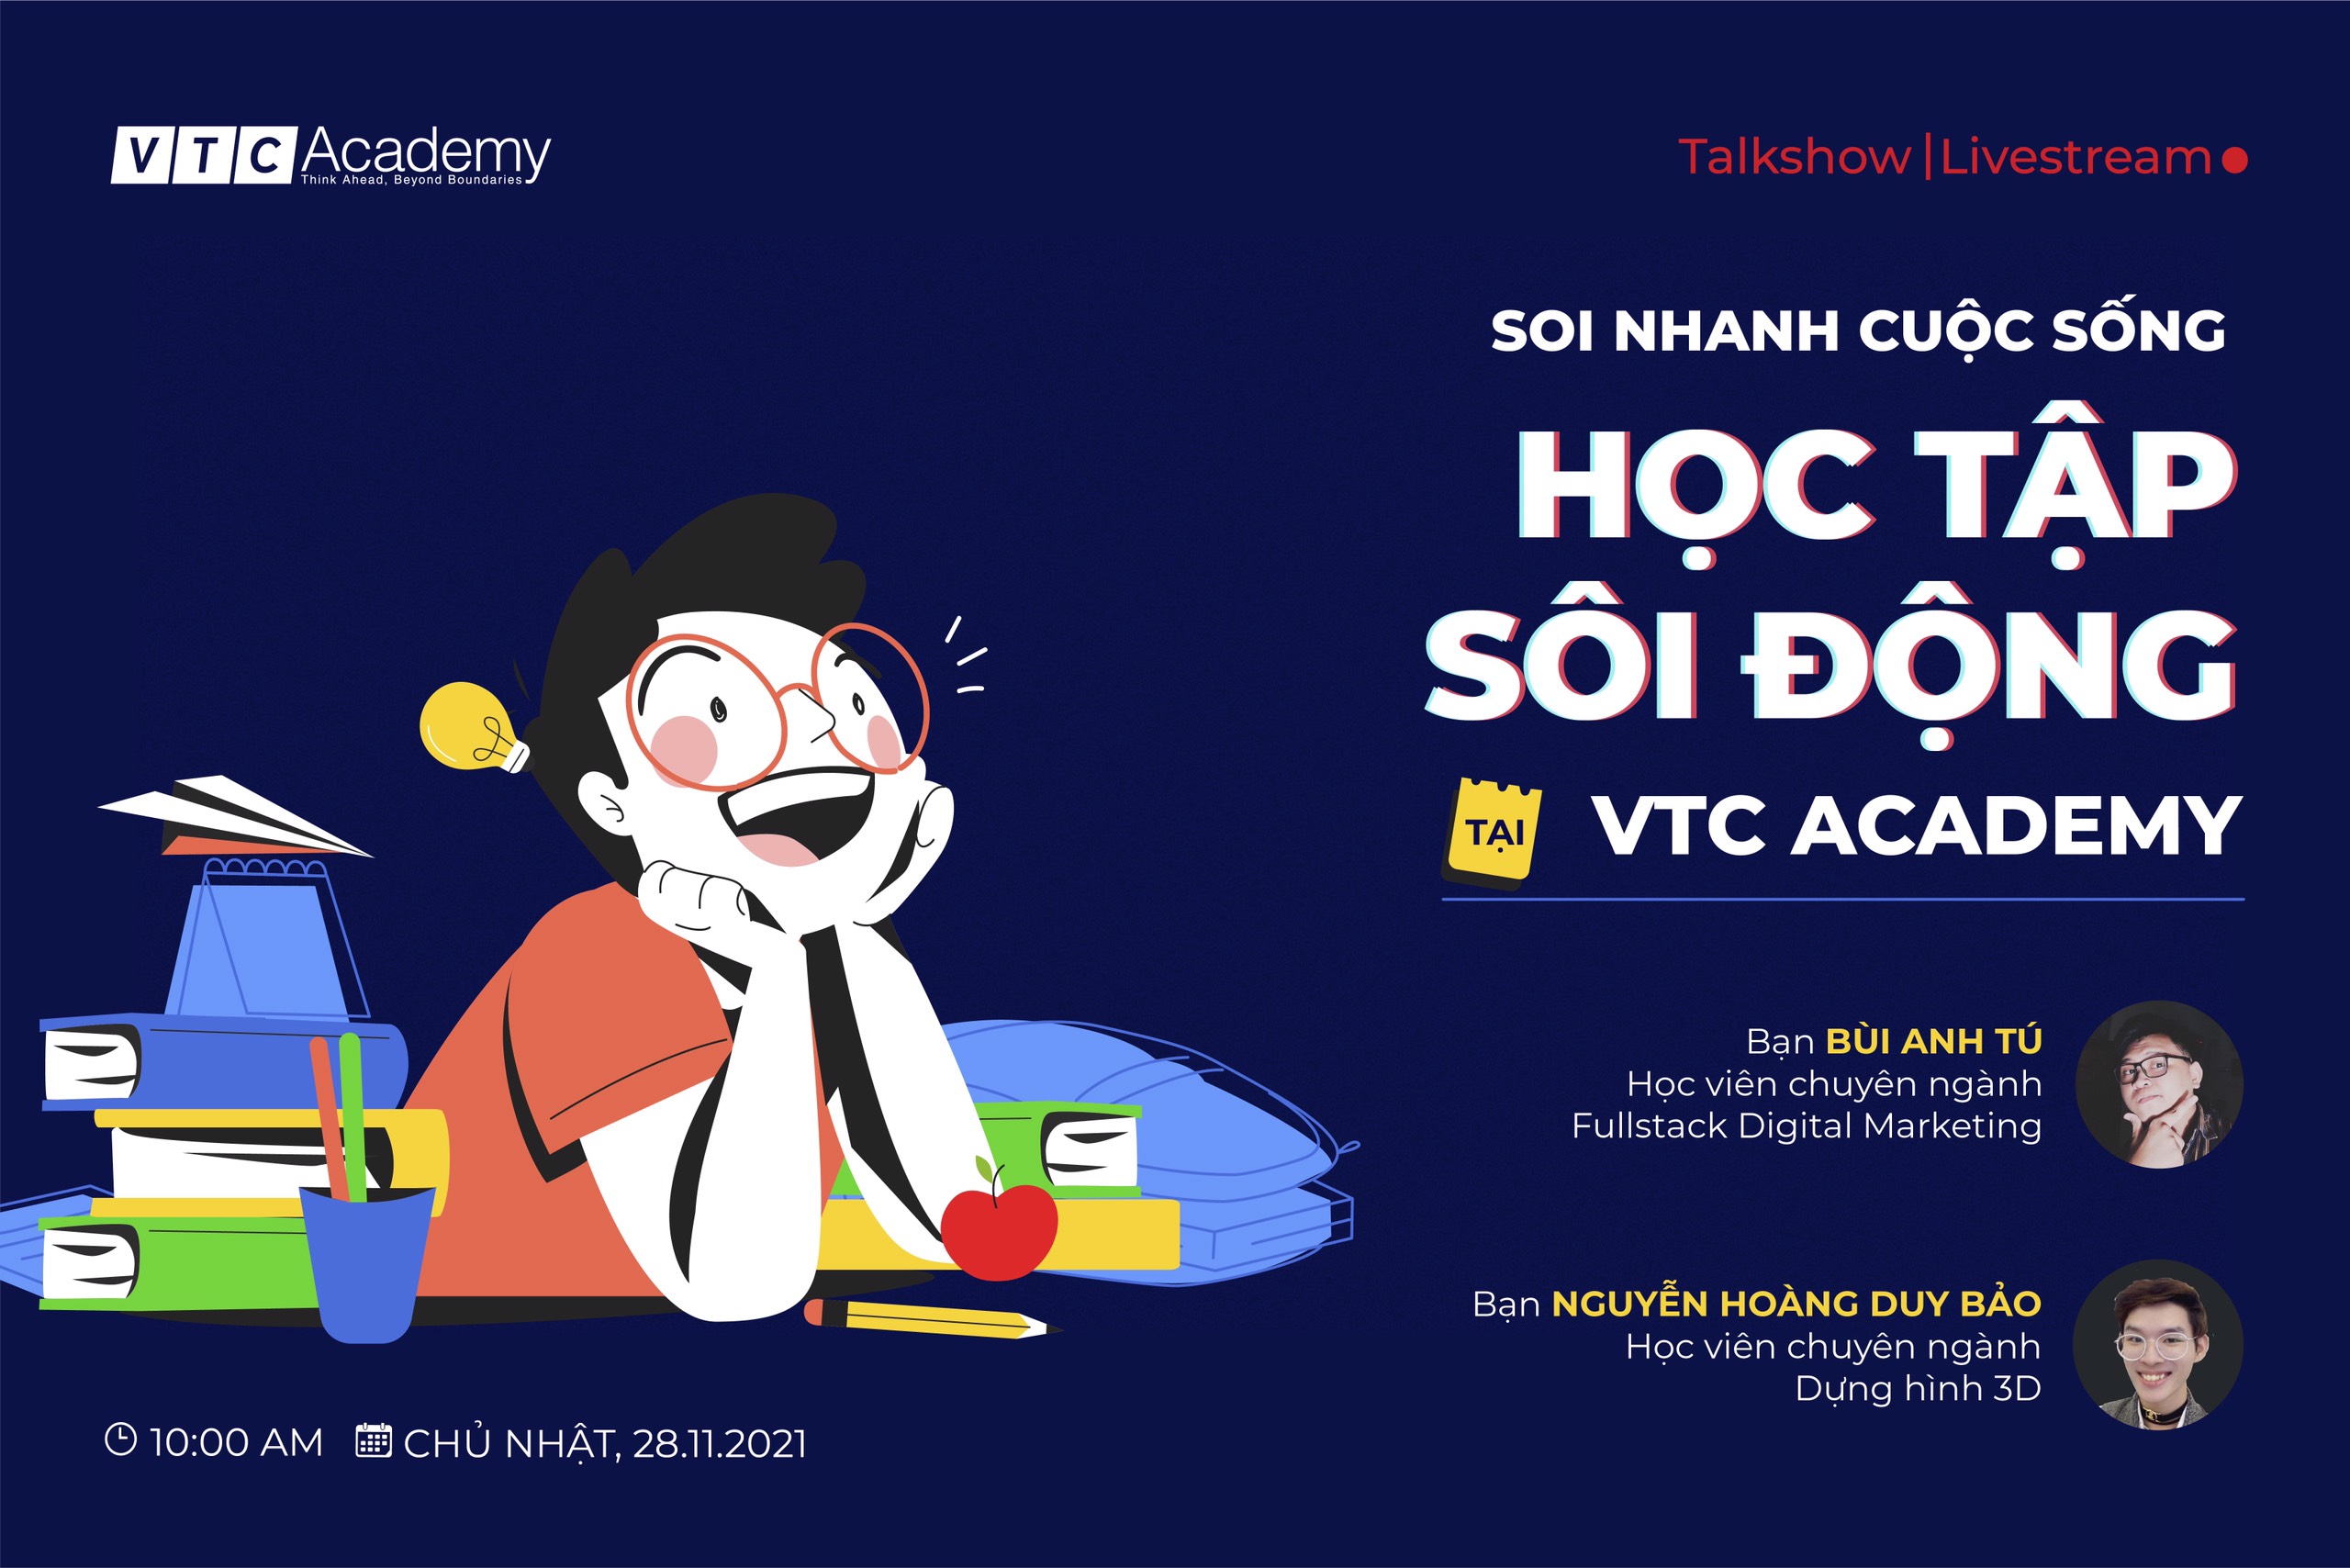 Talkshow trực tuyến: “Soi nhanh cuộc sống học tập sôi động tại VTC Academy”